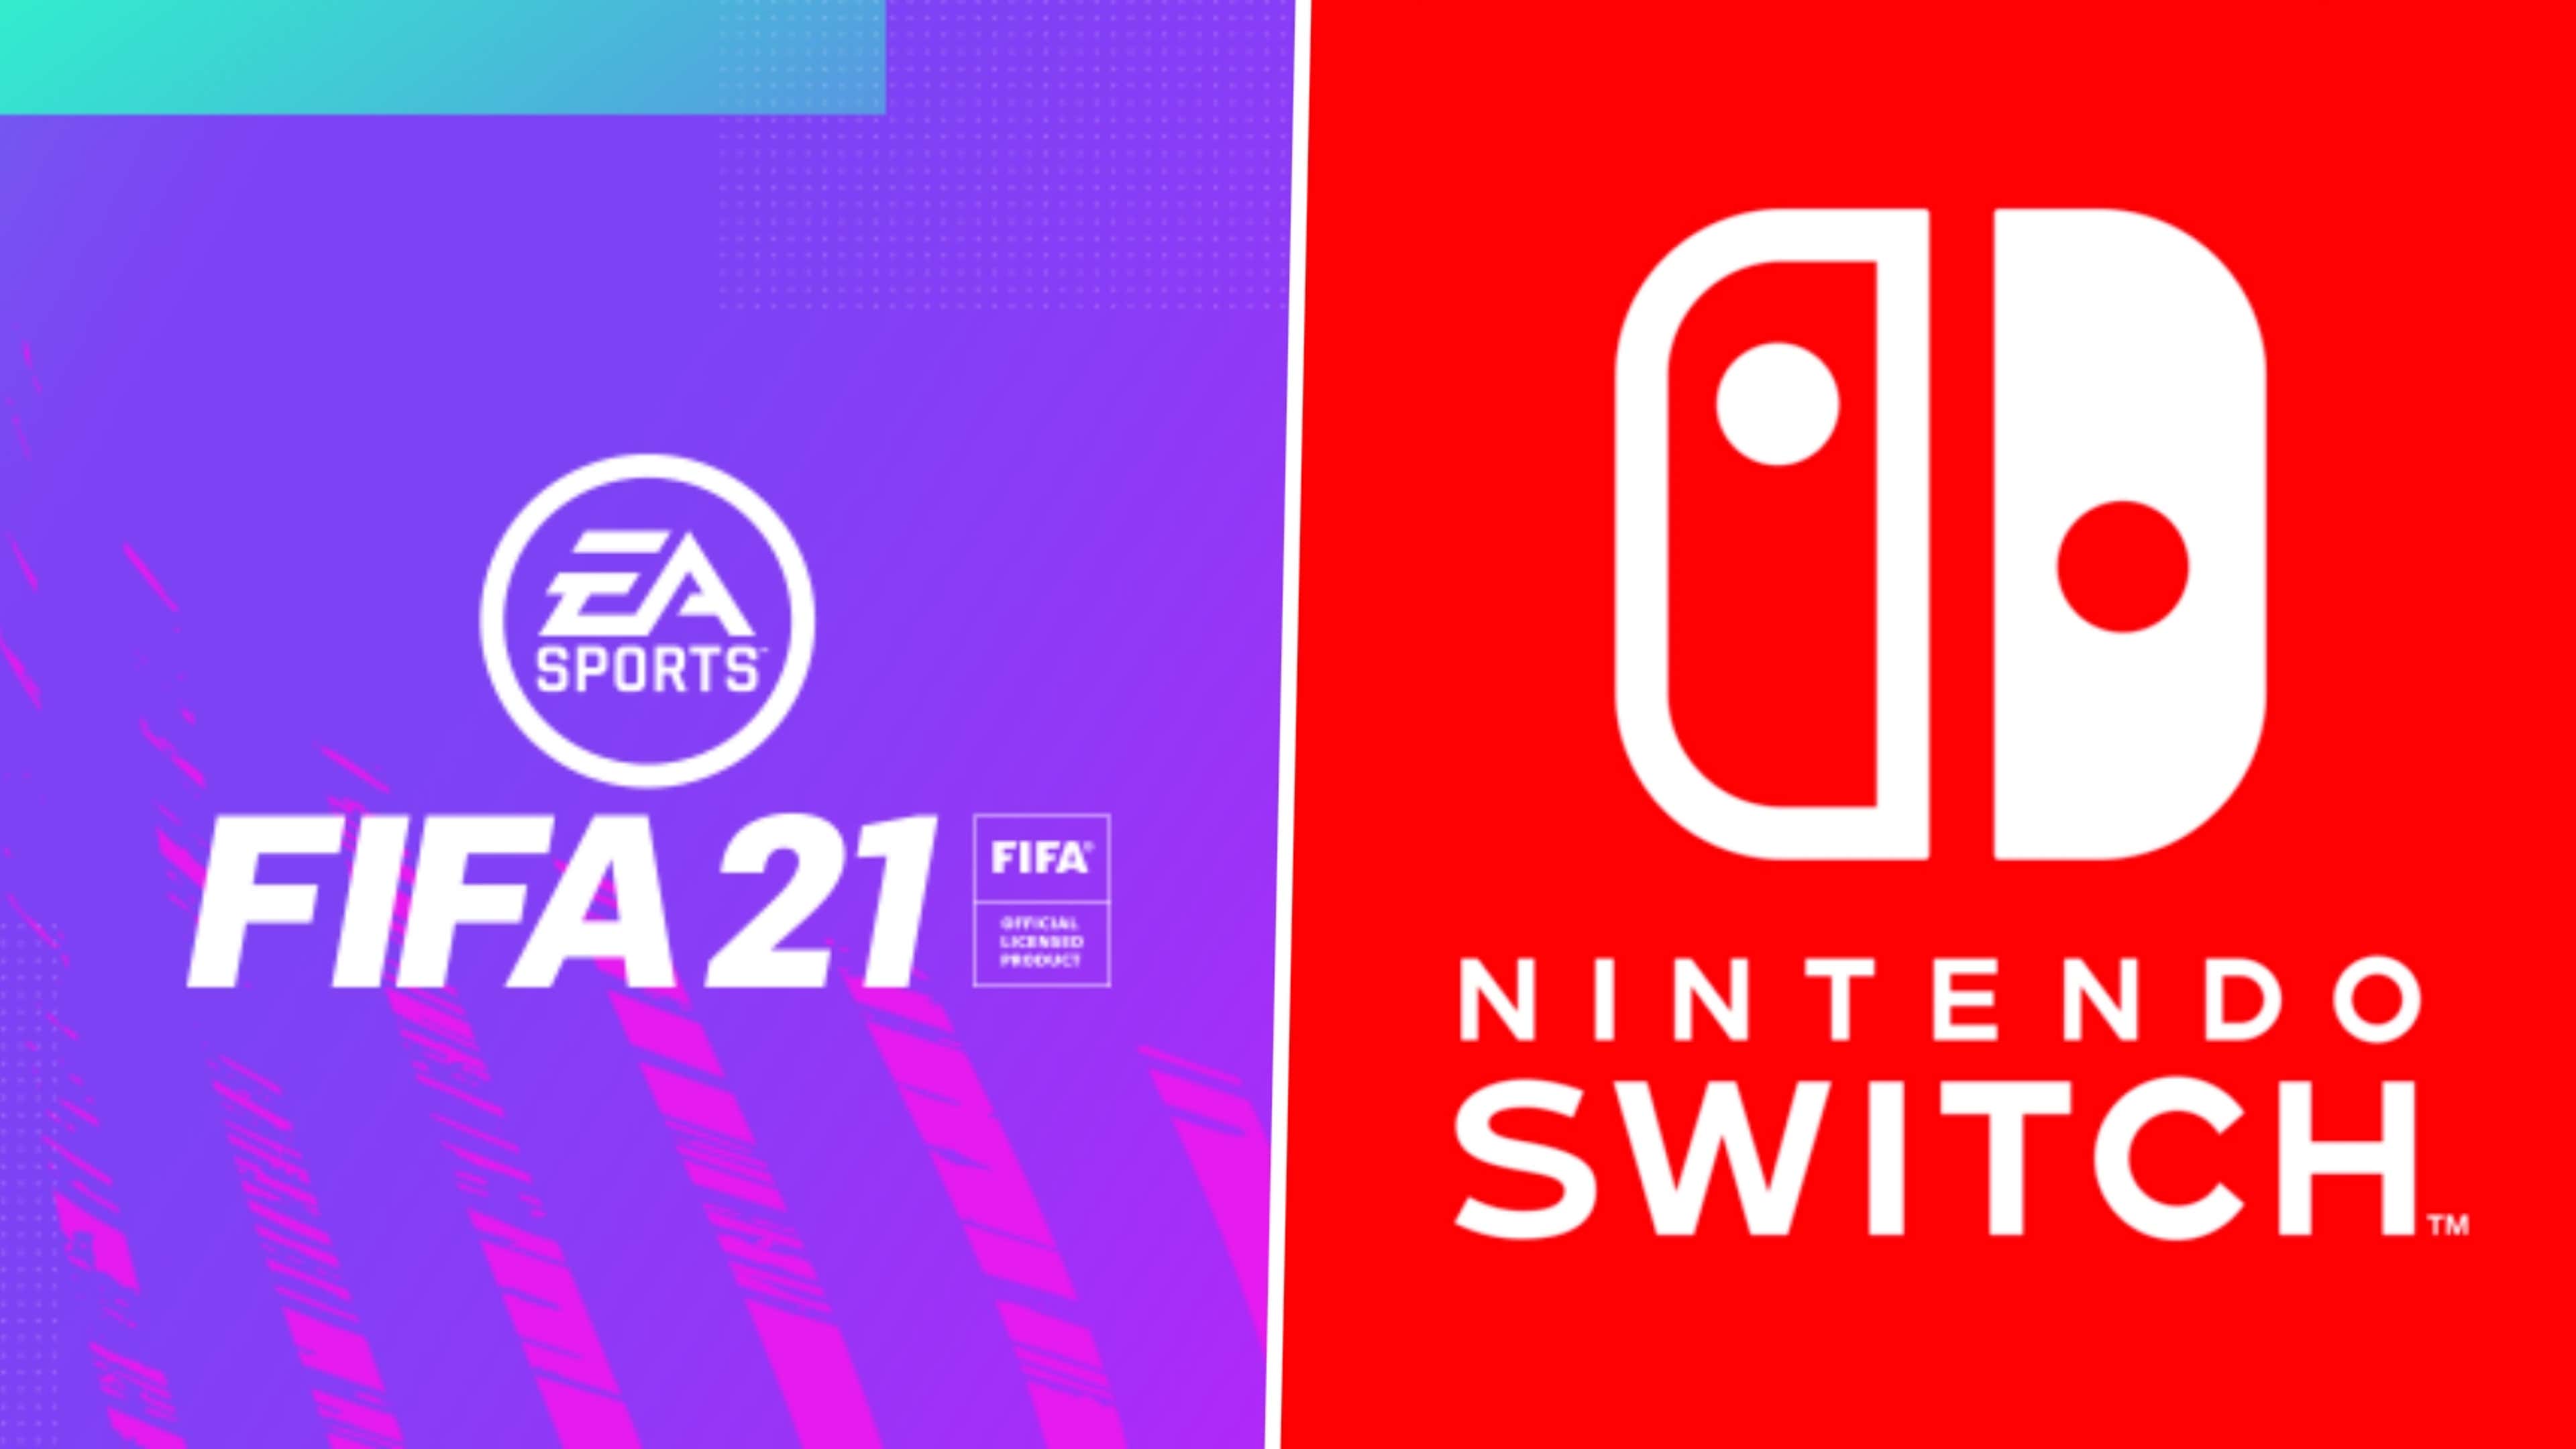 Fifa switch. FIFA 19 Нинтендо свитч. FIFA 21 Nintendo Switch. FIFA 19 Nintendo Switch обложка. FIFA 23 Nintendo Switch.